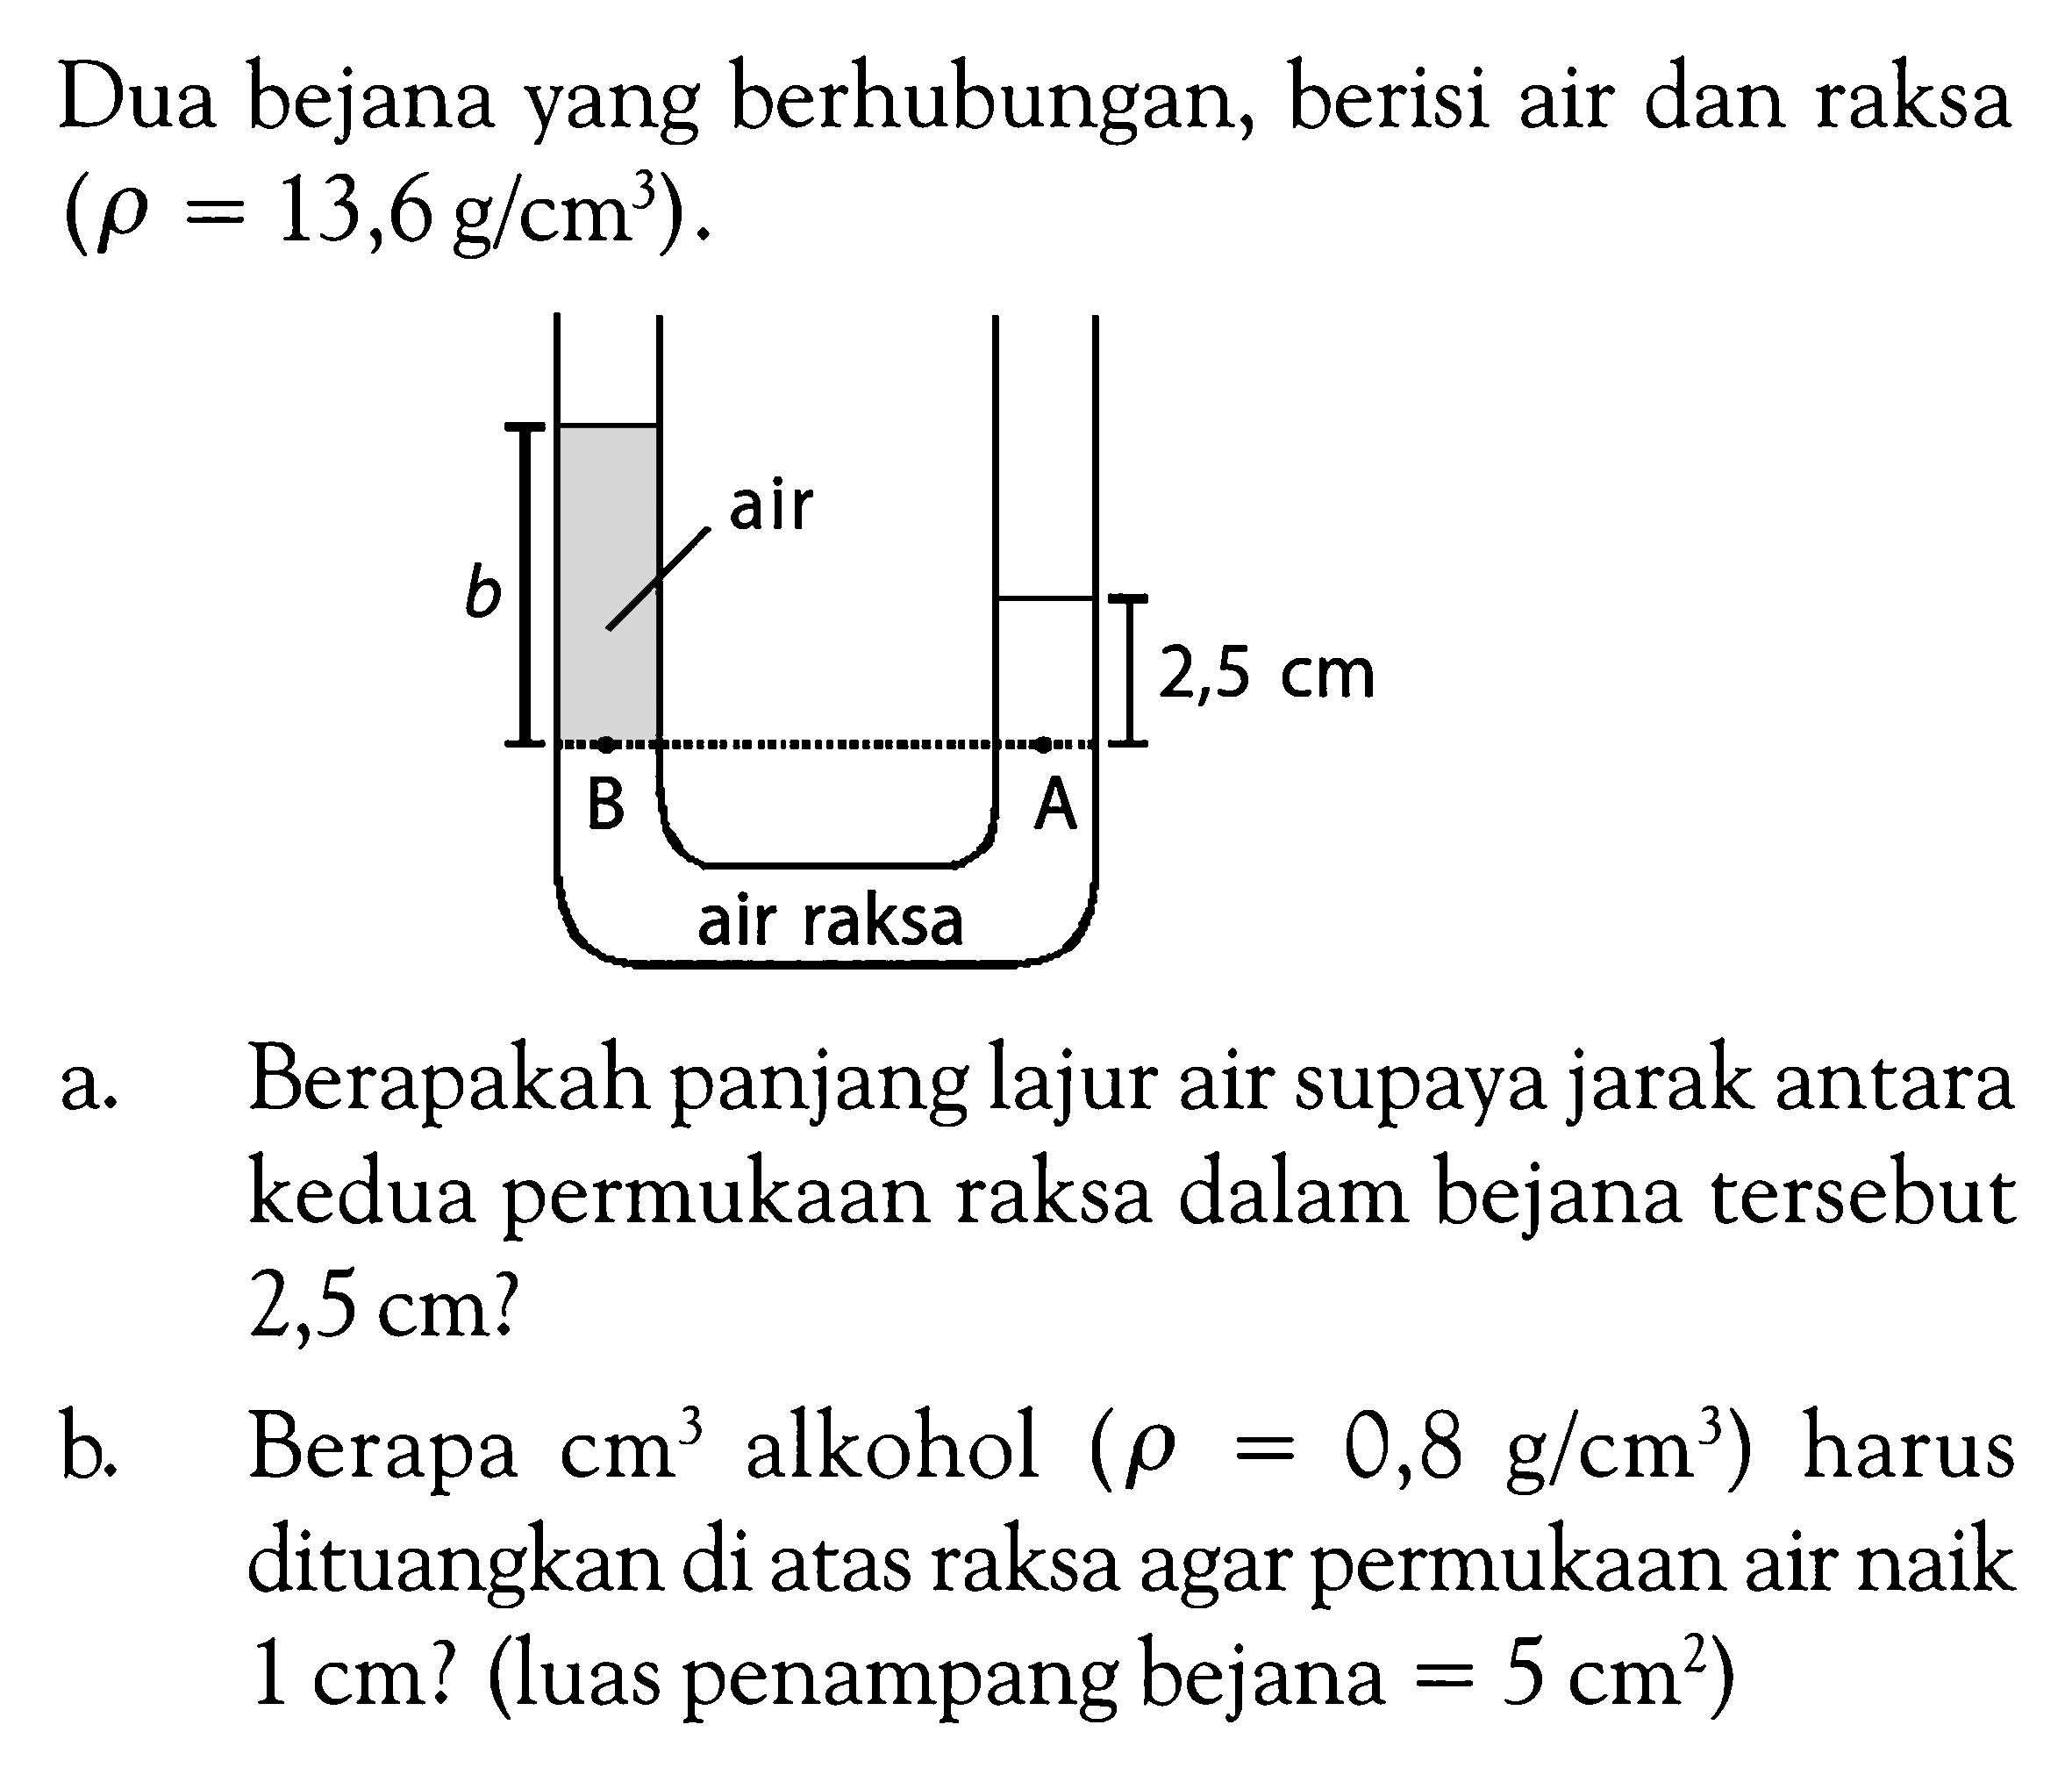 Dua bejana yang berhubungan, berisi air dan raksa (rho = 13,6 g / cm^3). a. Berapakah panjang lajur air supaya jarak antara kedua permukaan raksa dalam bejana tersebut 2,5 cm? b. Berapa cm^3 alkohol (rho = 0,8 g / cm^3) harus dituangkan di atas raksa agar permukaan air naik 1 cm? (luas penampang bejana = 5 cm^2)